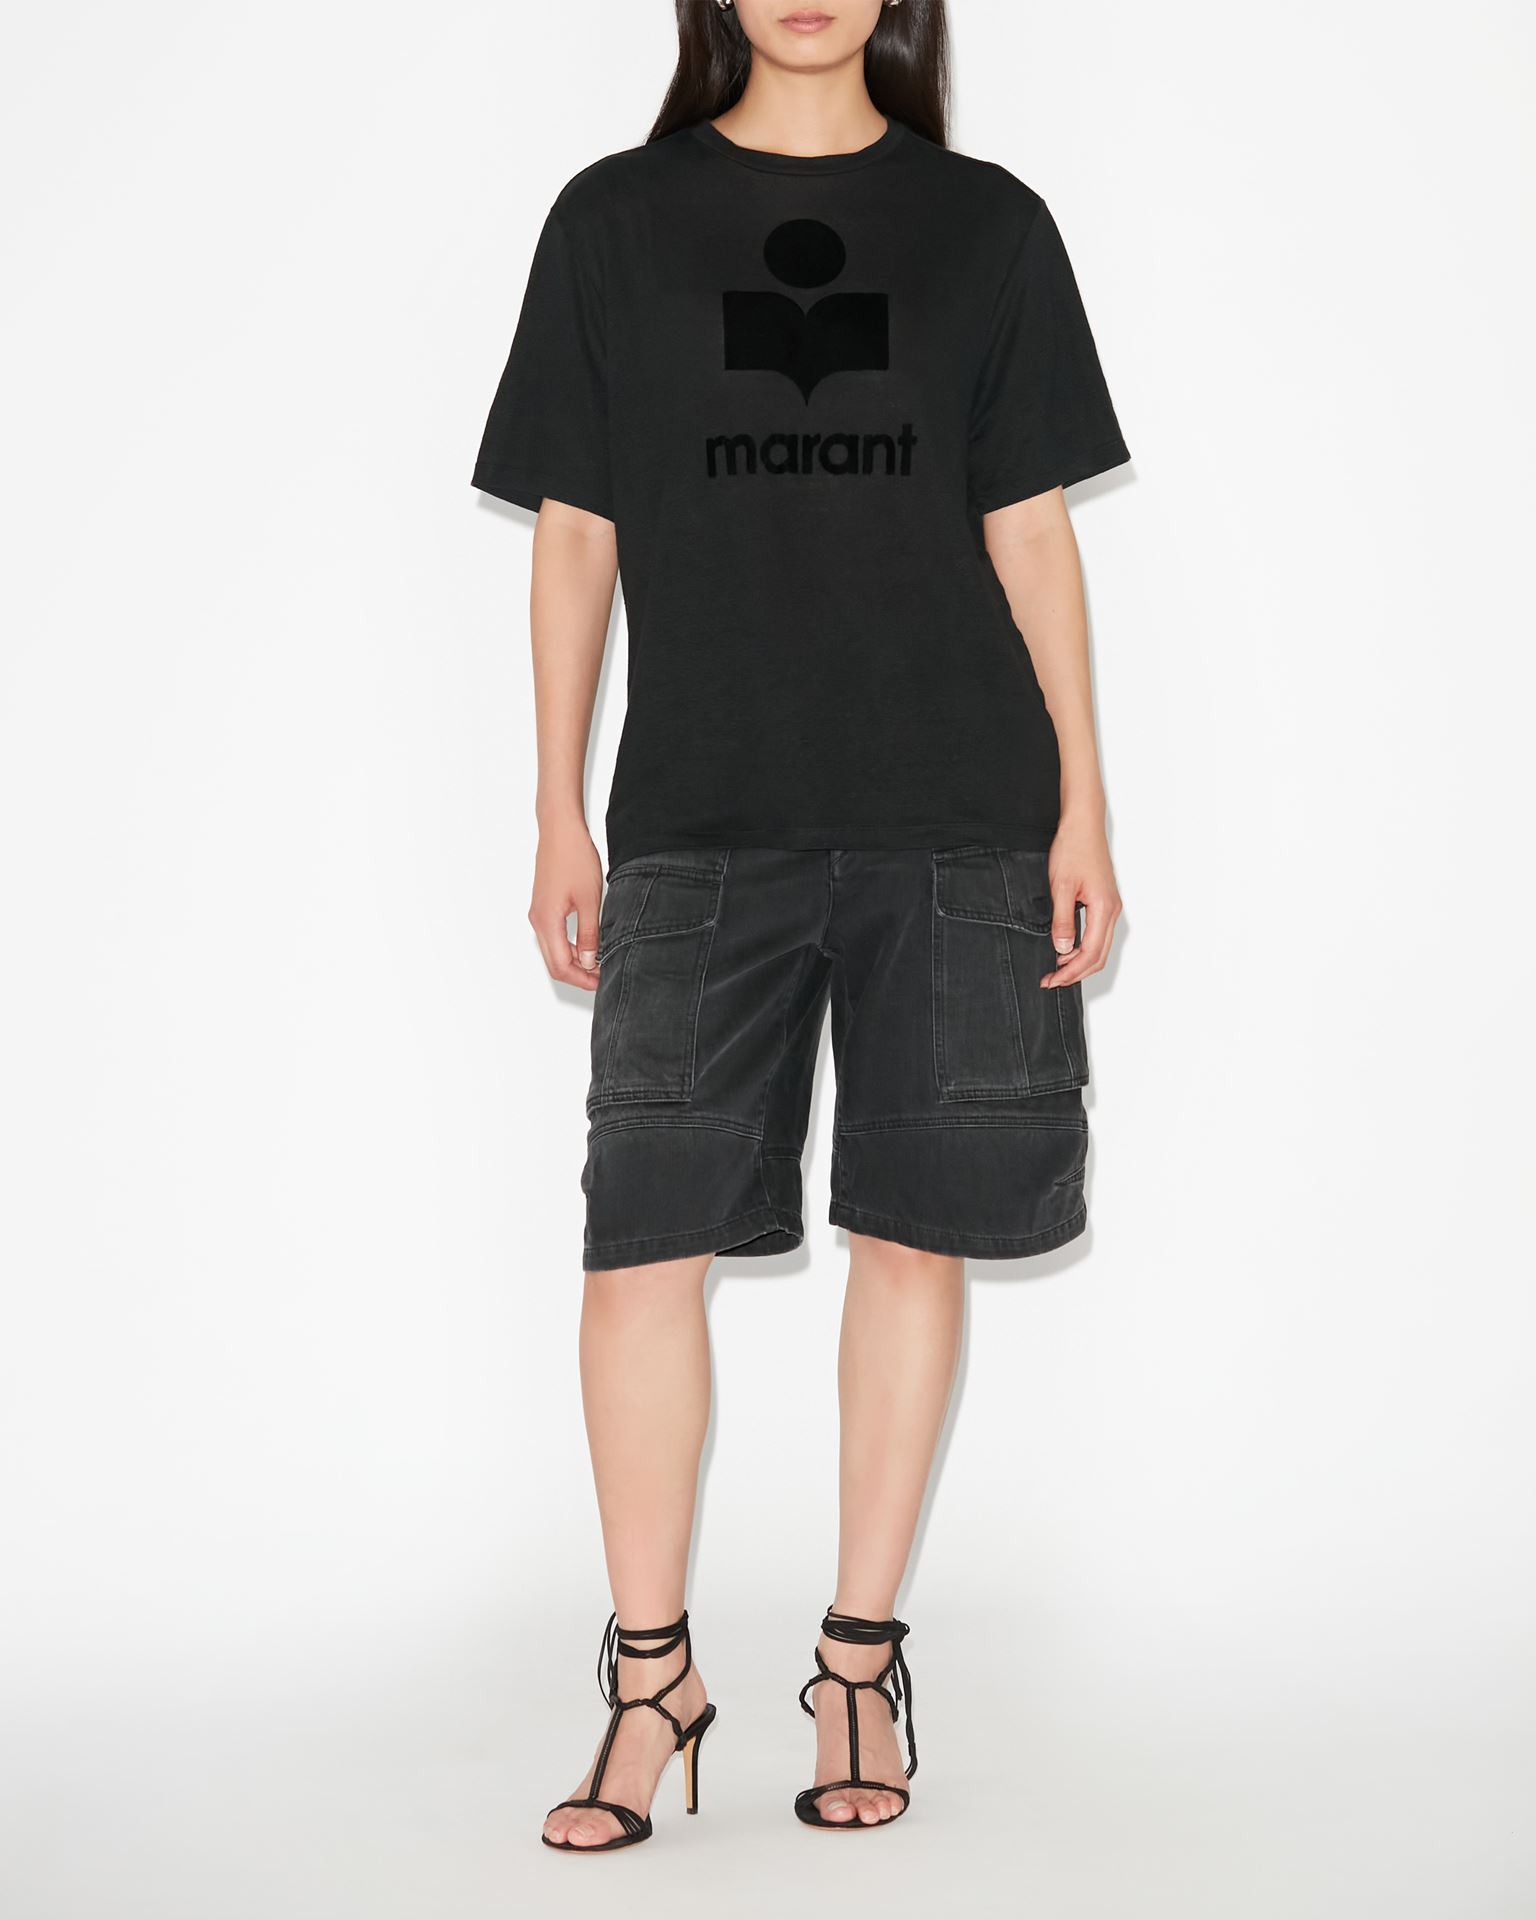 Isabel Marant Marant Étoile, Zewel Logo Tee-shirt - Women - Black